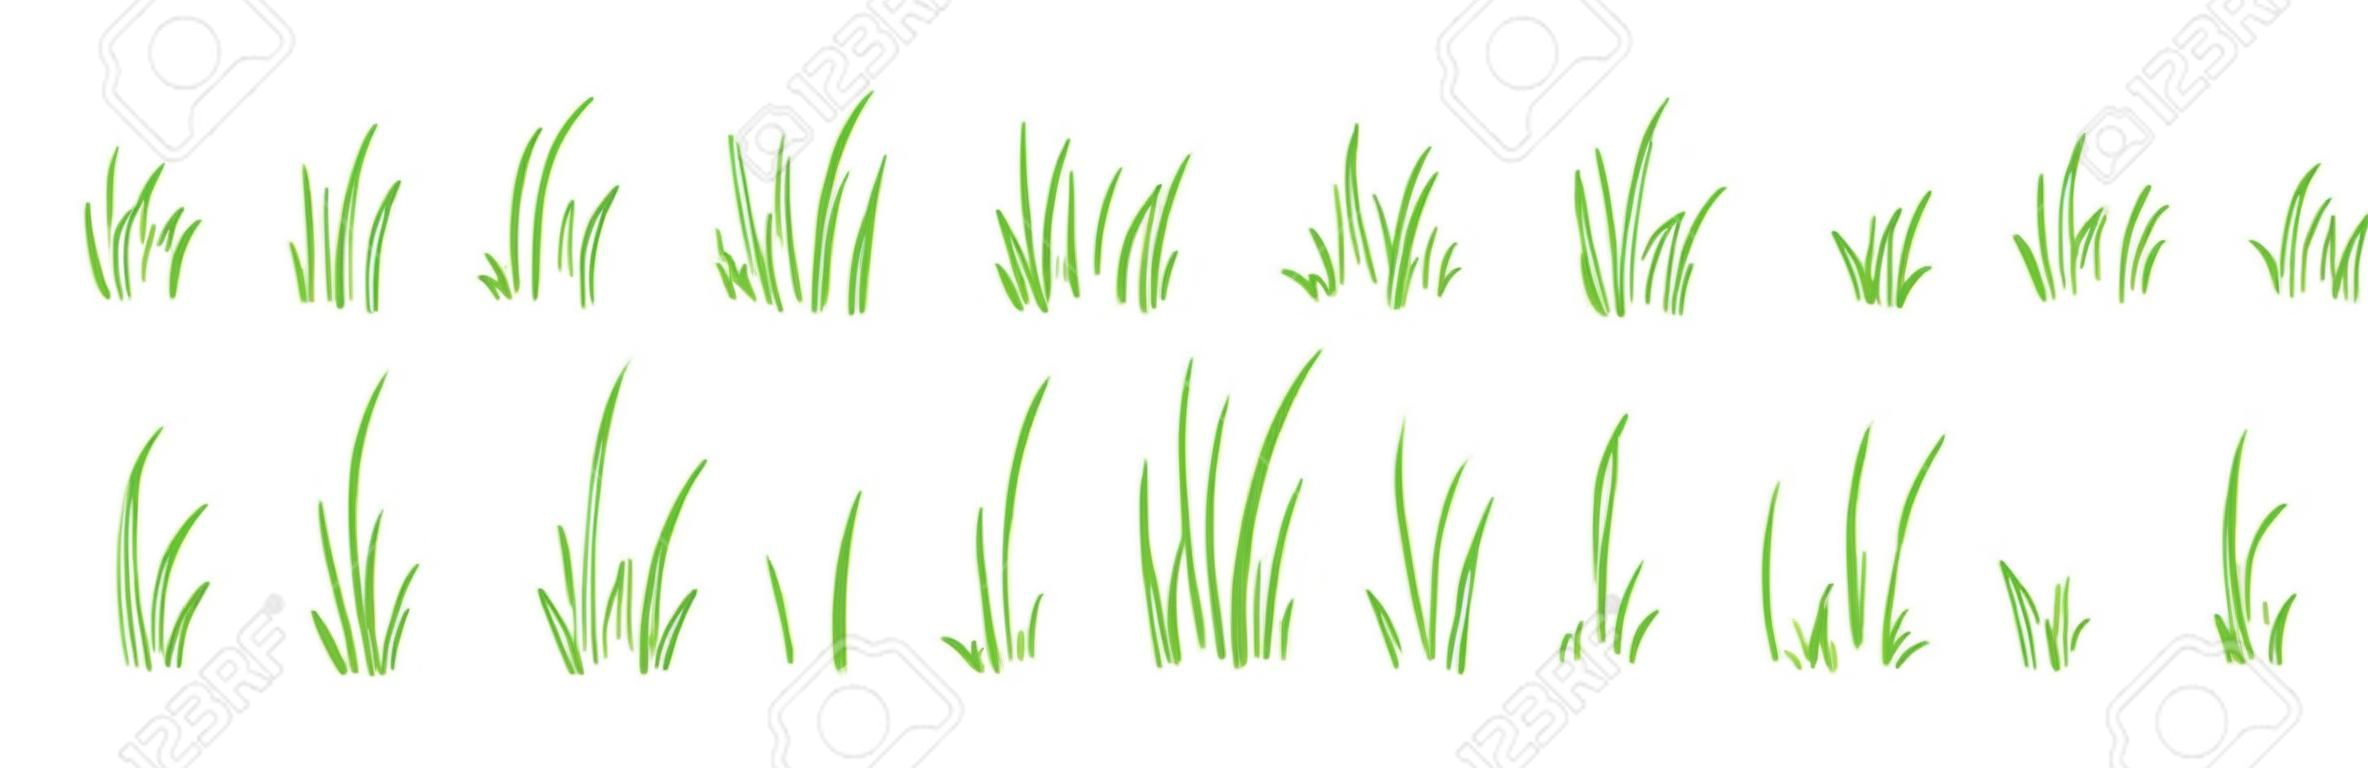 Trawa krzak linii wektor zestaw wyciągnąć rękę, elementy szkicu łąka i krajobraz, trawnik bazgroły, projekt zarys zielonej granicy na białym tle. ilustracja natura